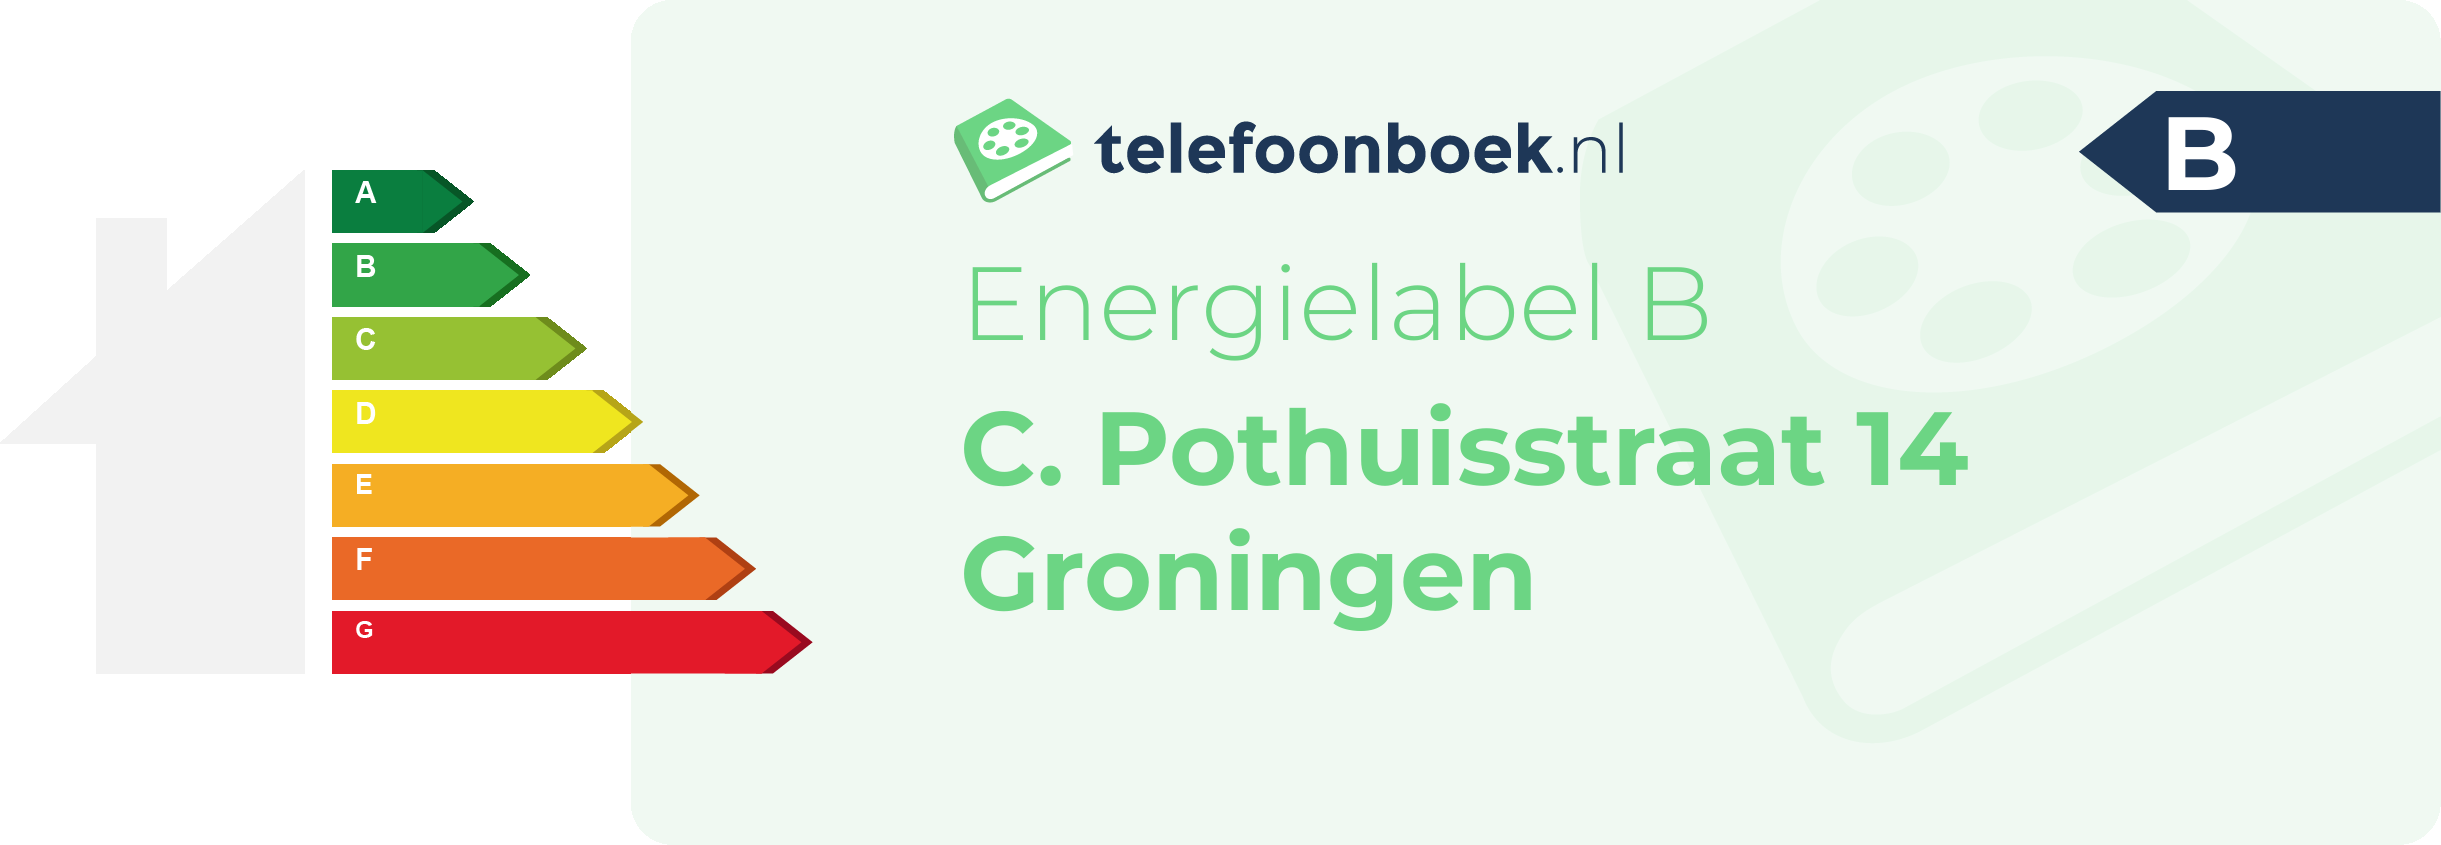 Energielabel C. Pothuisstraat 14 Groningen